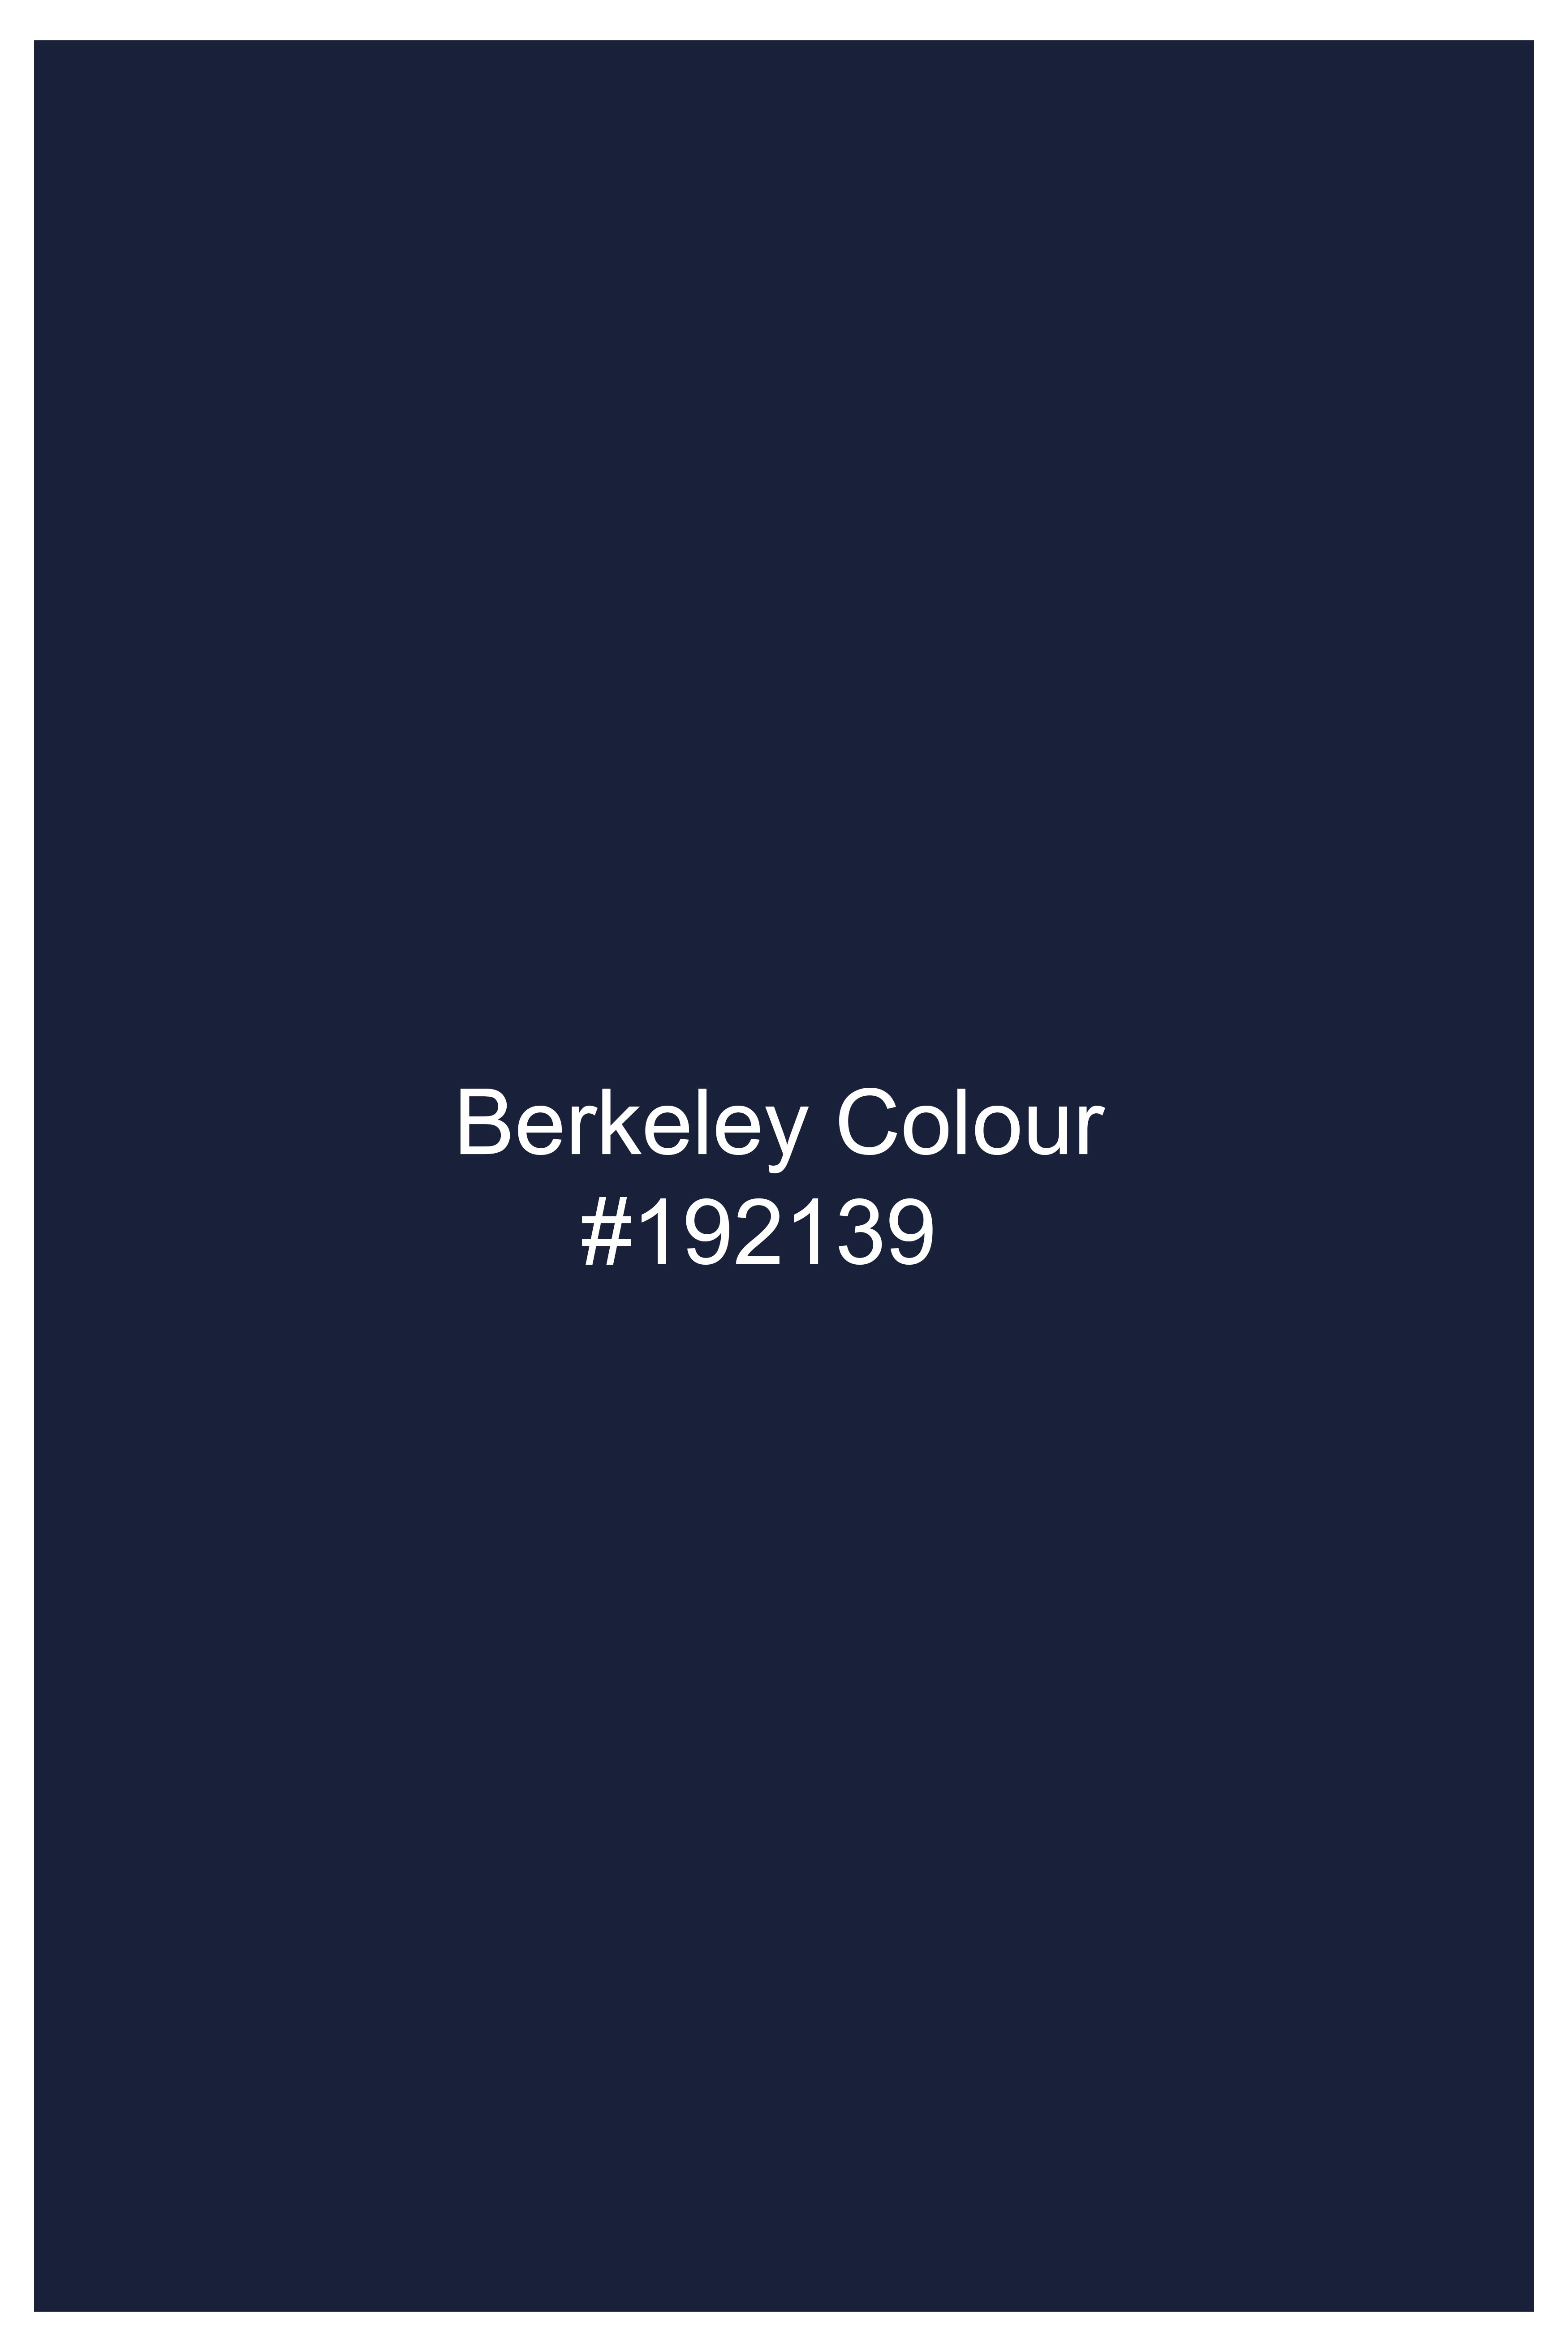 Berkeley Blue Wool Rich Pant T2820-28, T2820-30, T2820-32, T2820-34, T2820-36, T2820-38, T2820-40, T2820-42, T2820-44